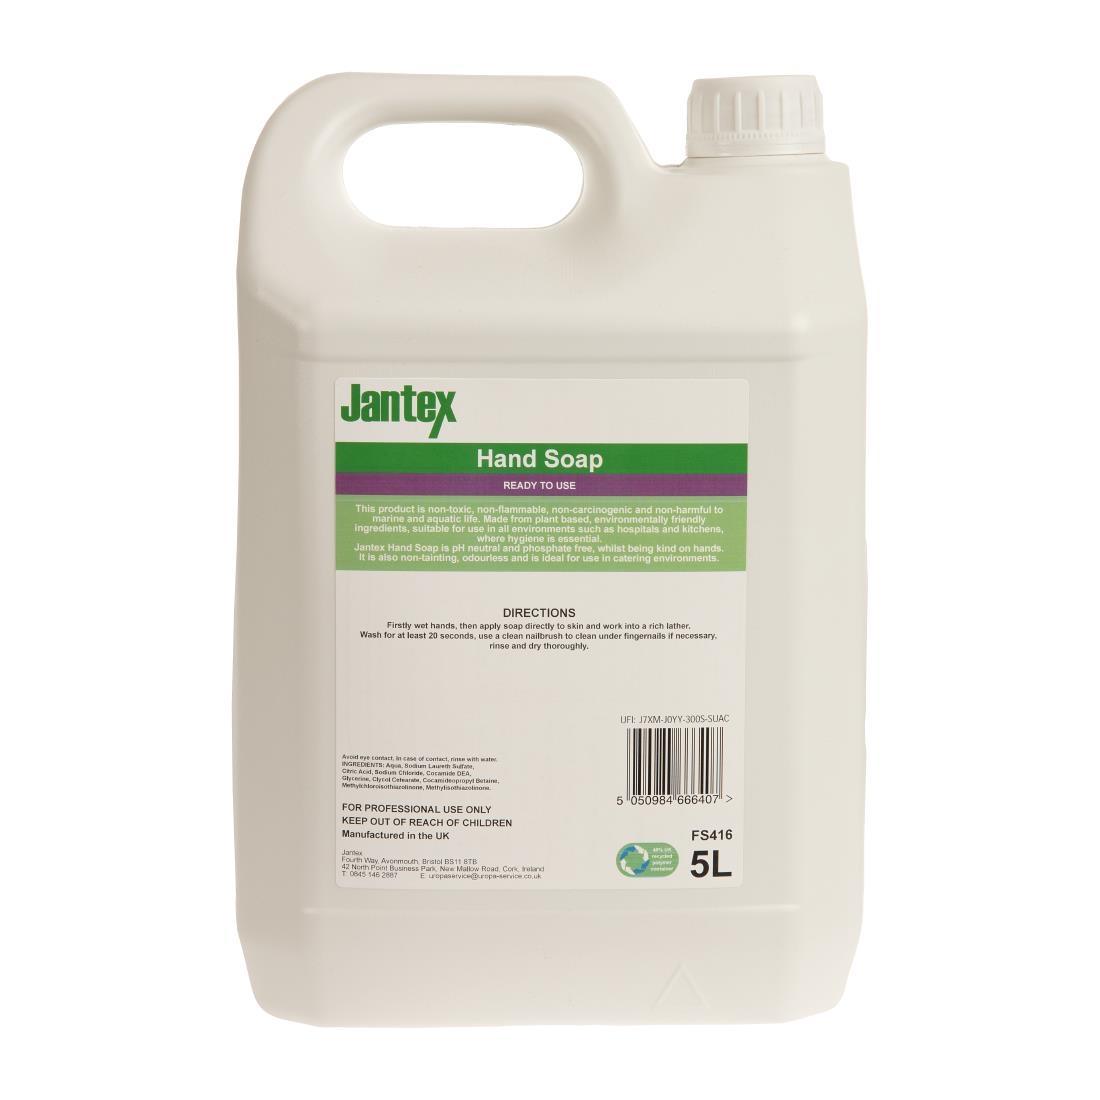 Jantex Green Hand Soap Lotion Ready To Use 5Ltr - FS416  - 3